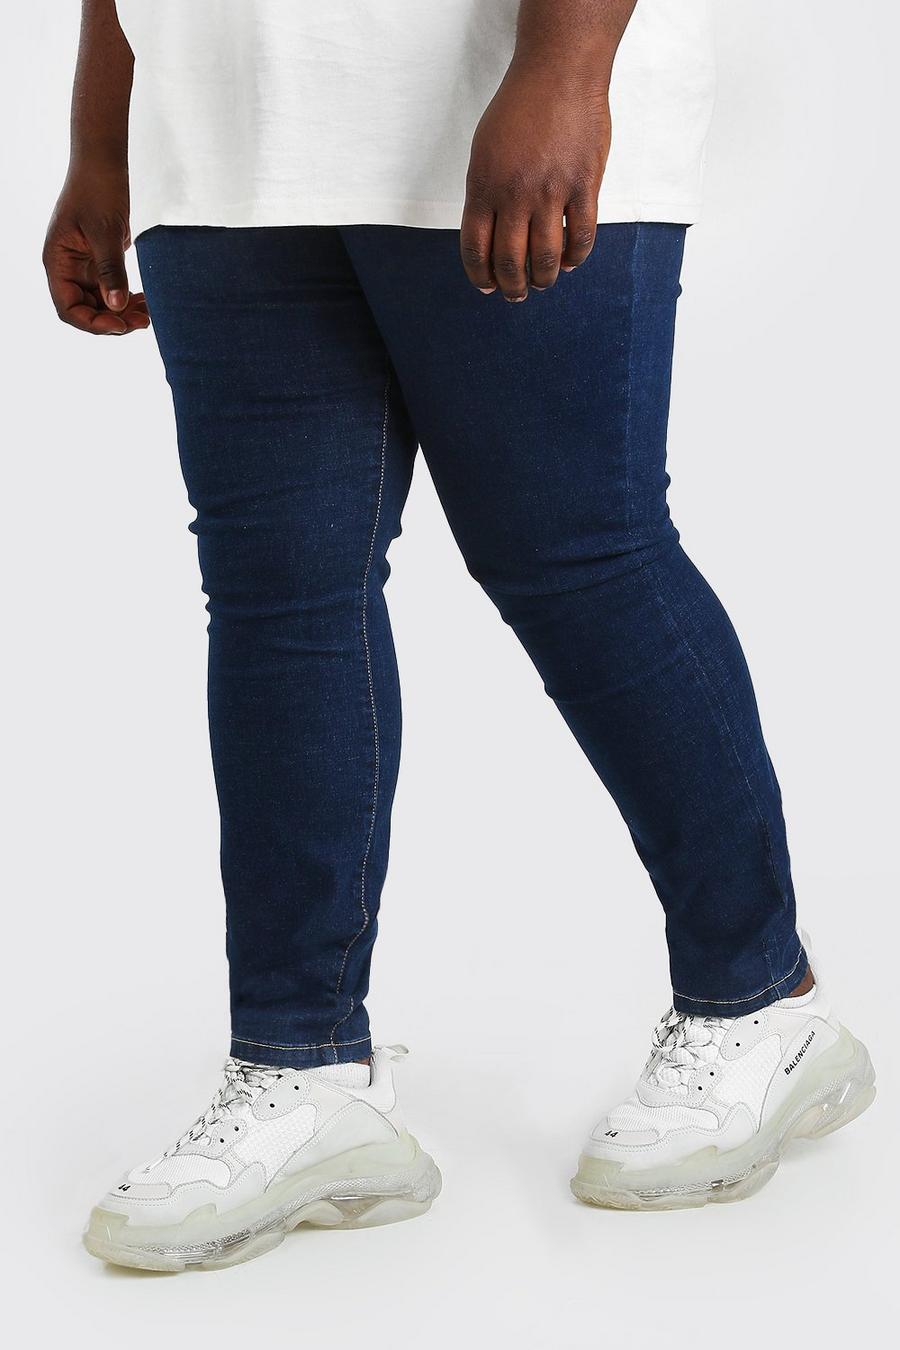 כחול כהה מכנסי ג'ינס סופר סקיני לגברים גדולים וגבוהים image number 1